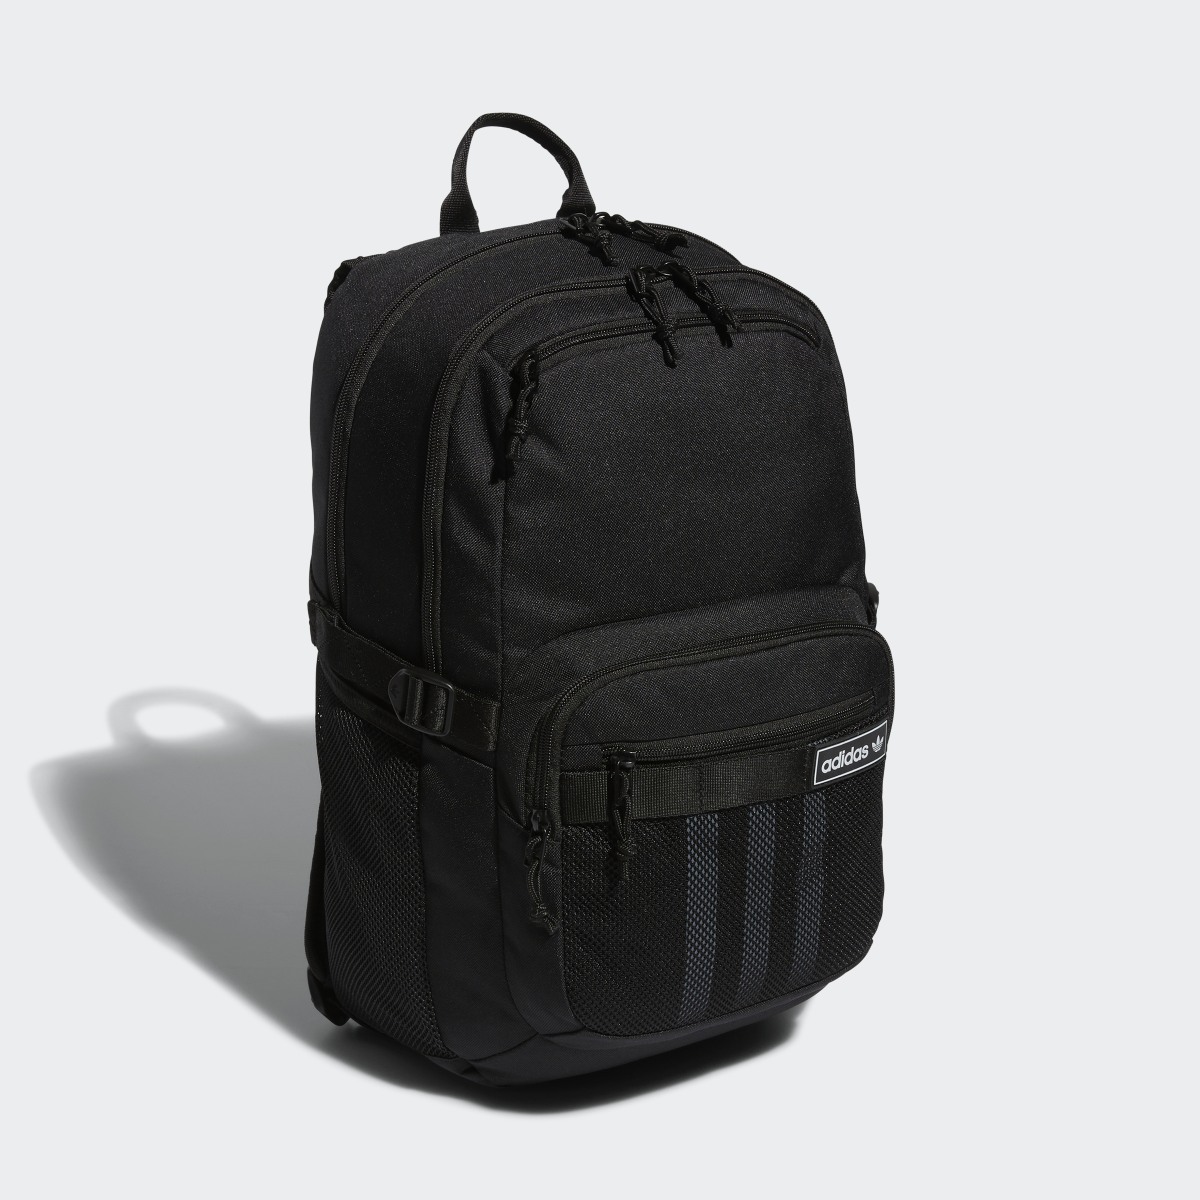 Adidas Energy Backpack. 4